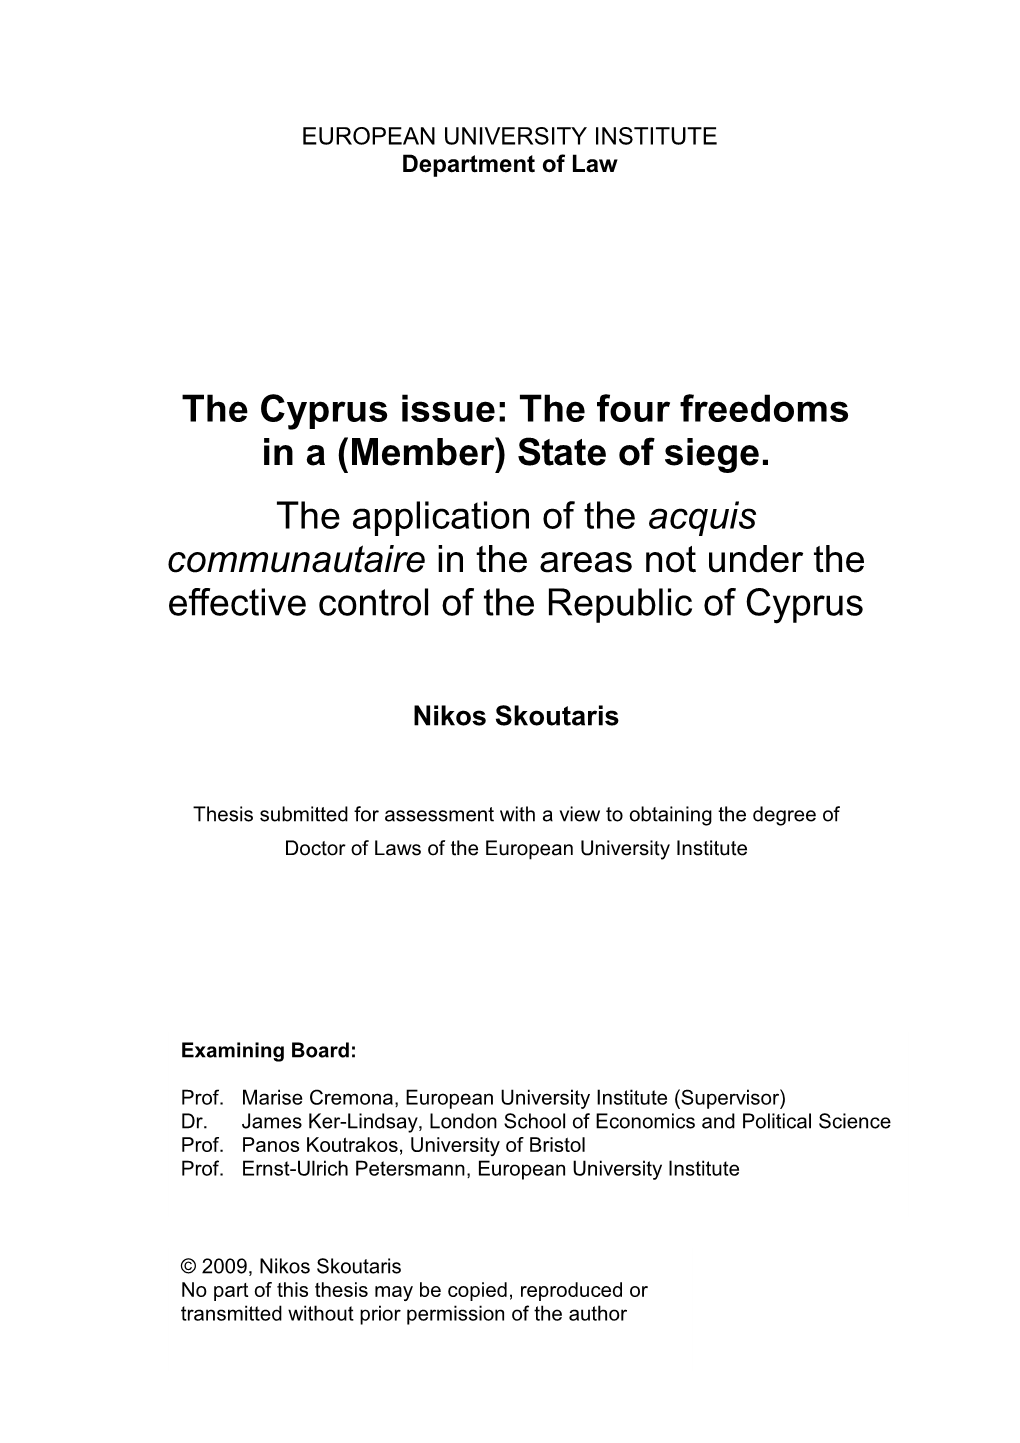 Nikos Skoutaris Ph.D Full Document